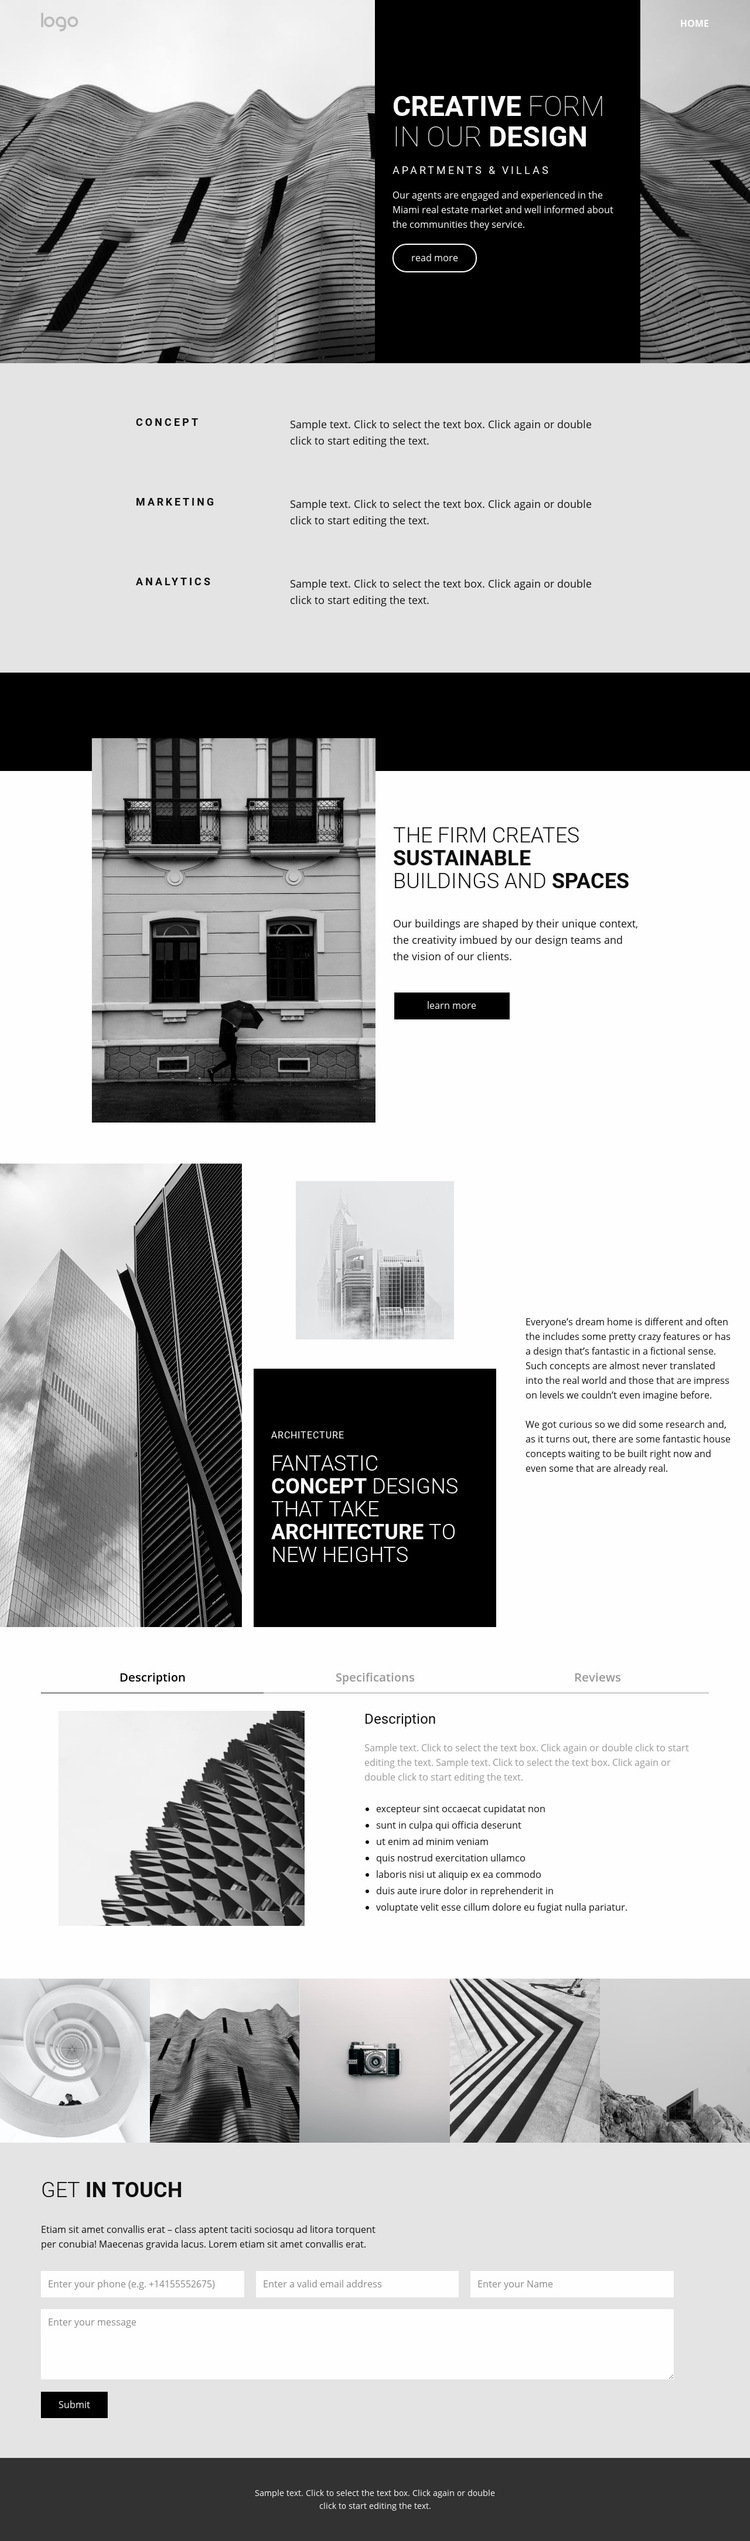 Creative concept architecture Web Page Design